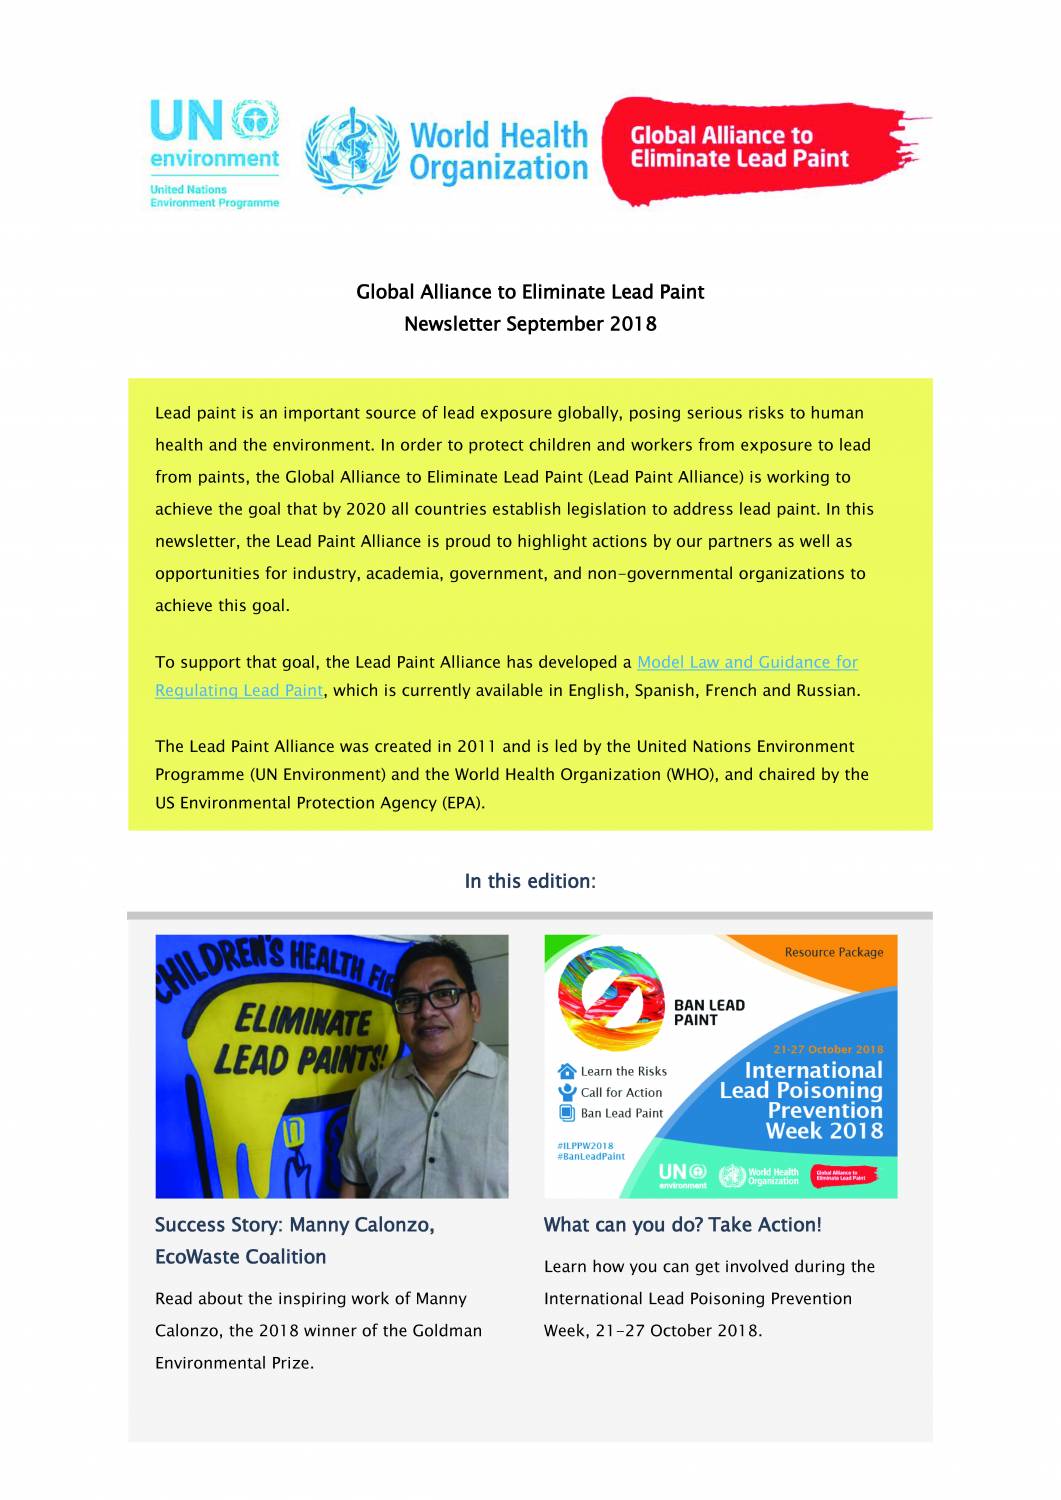 Global Alliance to Eliminate Lead Paint Newsletter, September 2018